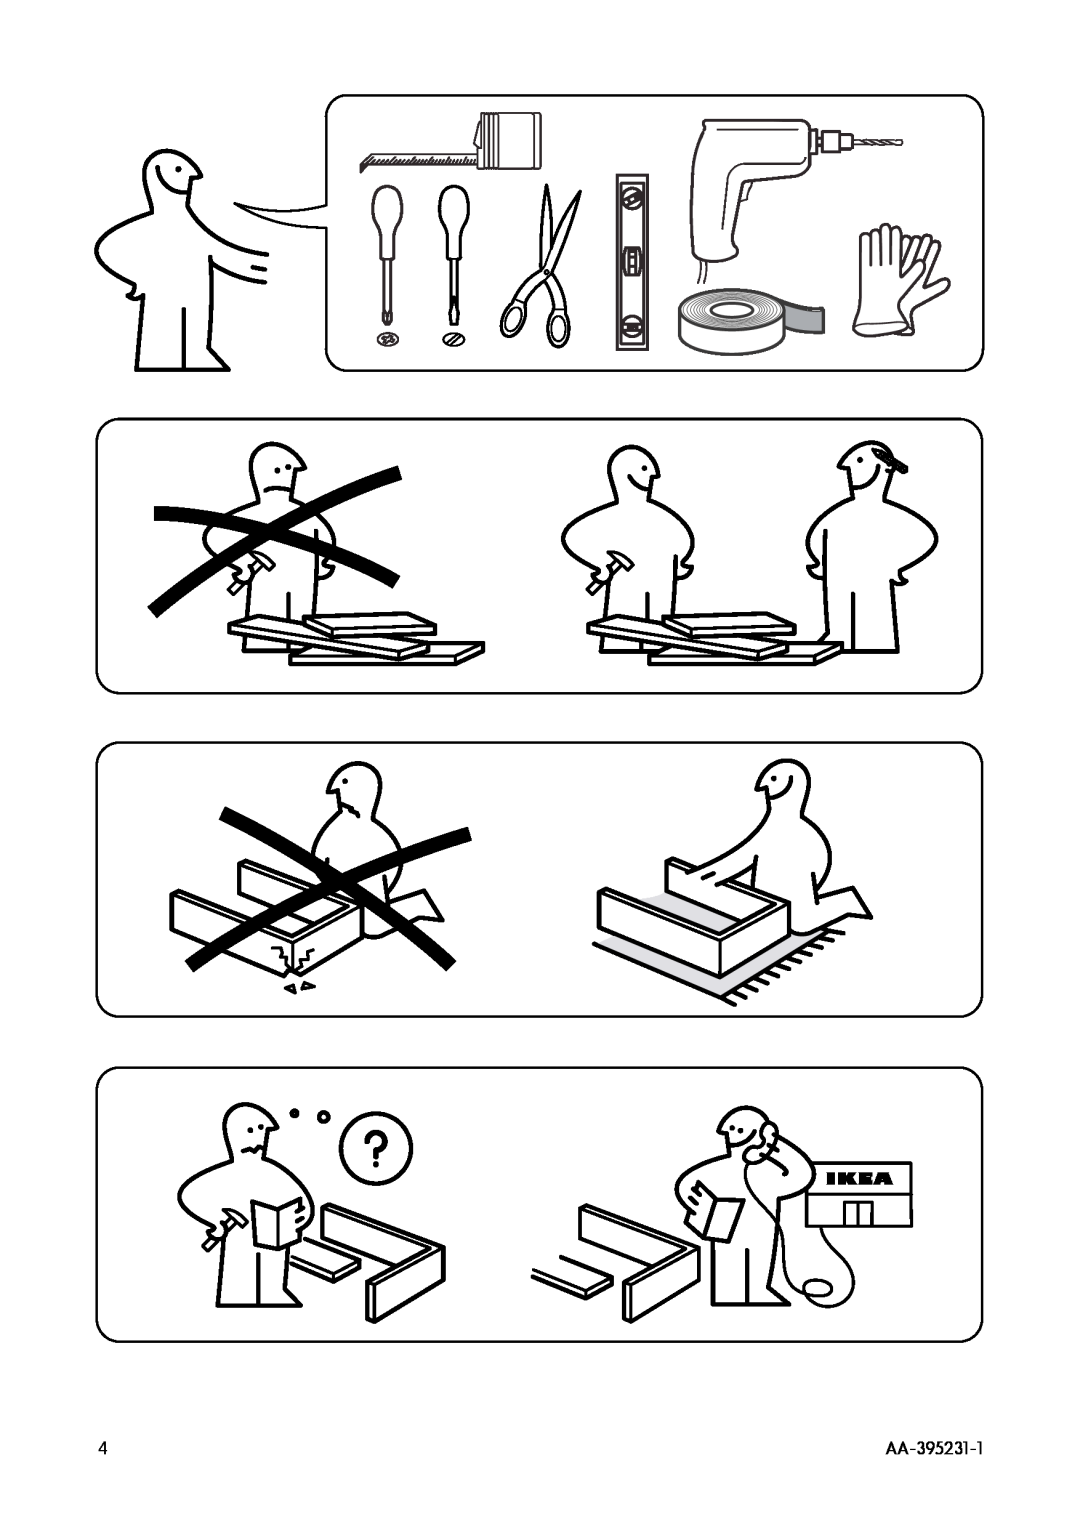 IKEA DW45 manual AA-395231-1 